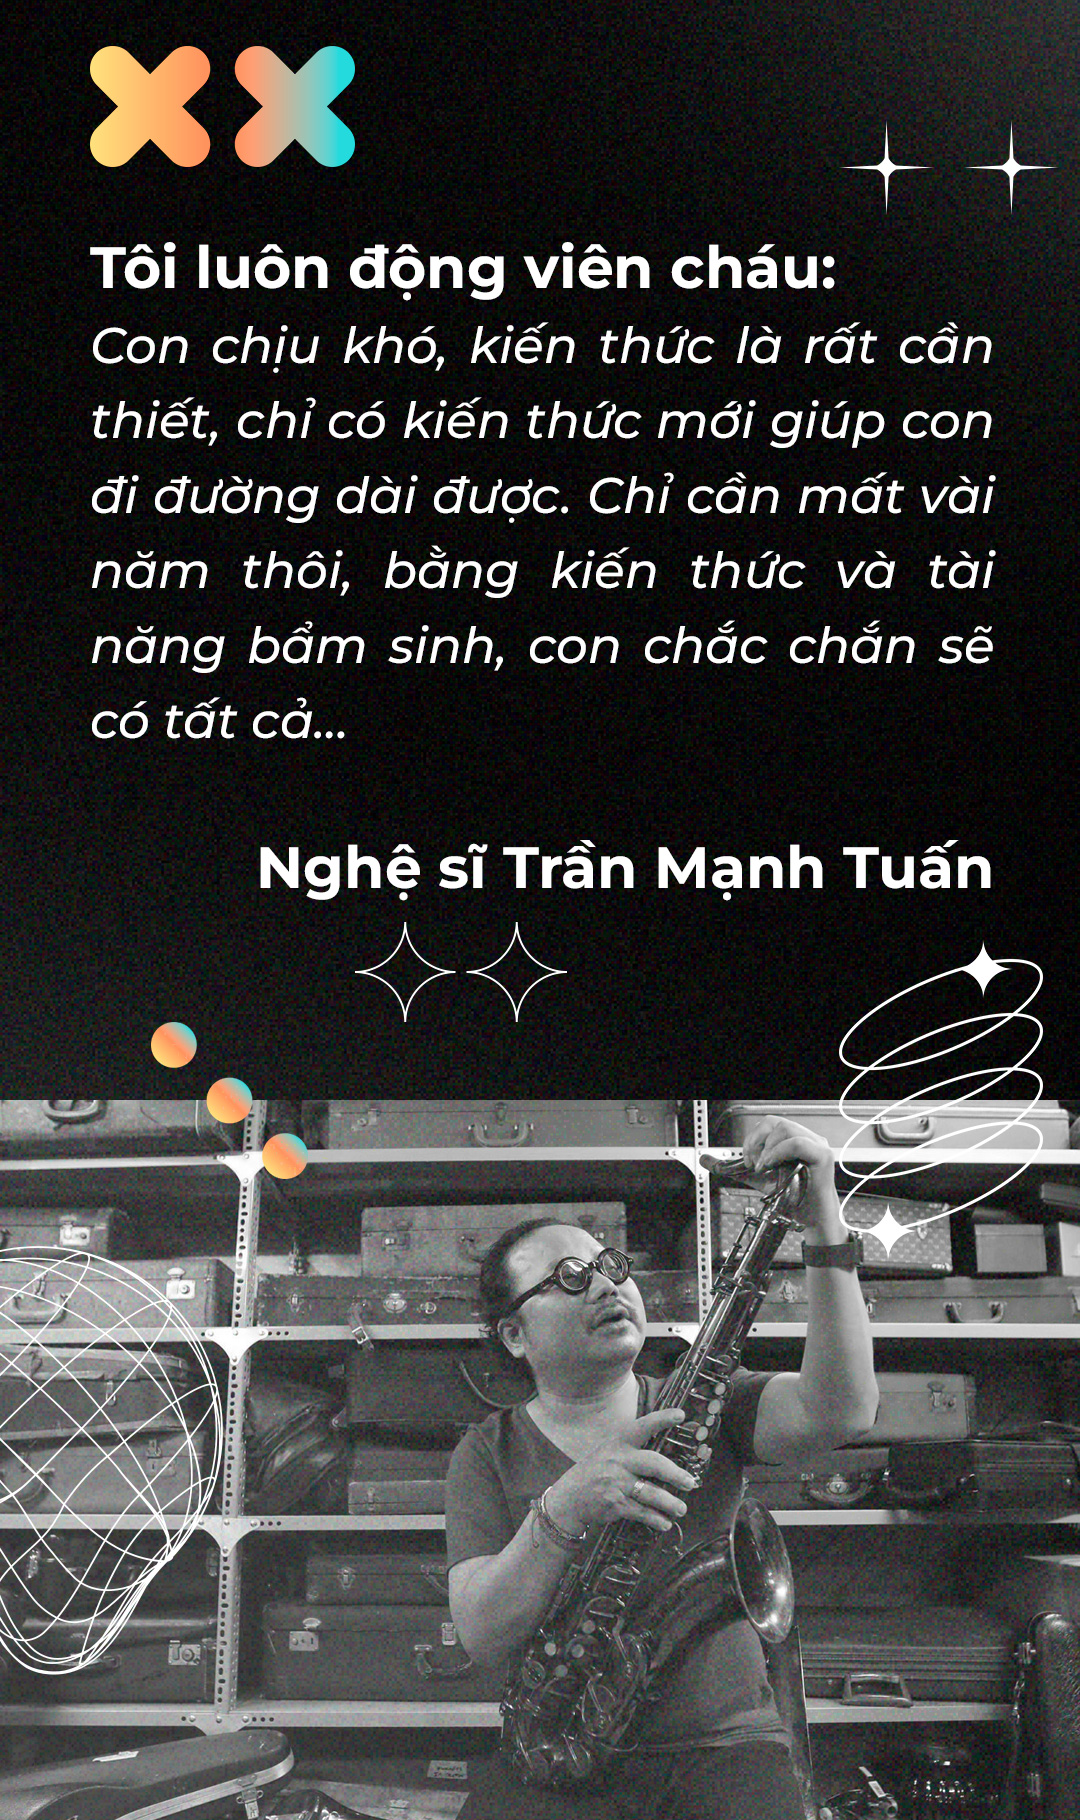 Trần Mạnh Tuấn & An Trần: Cha, con và Berklee - Ảnh 5.